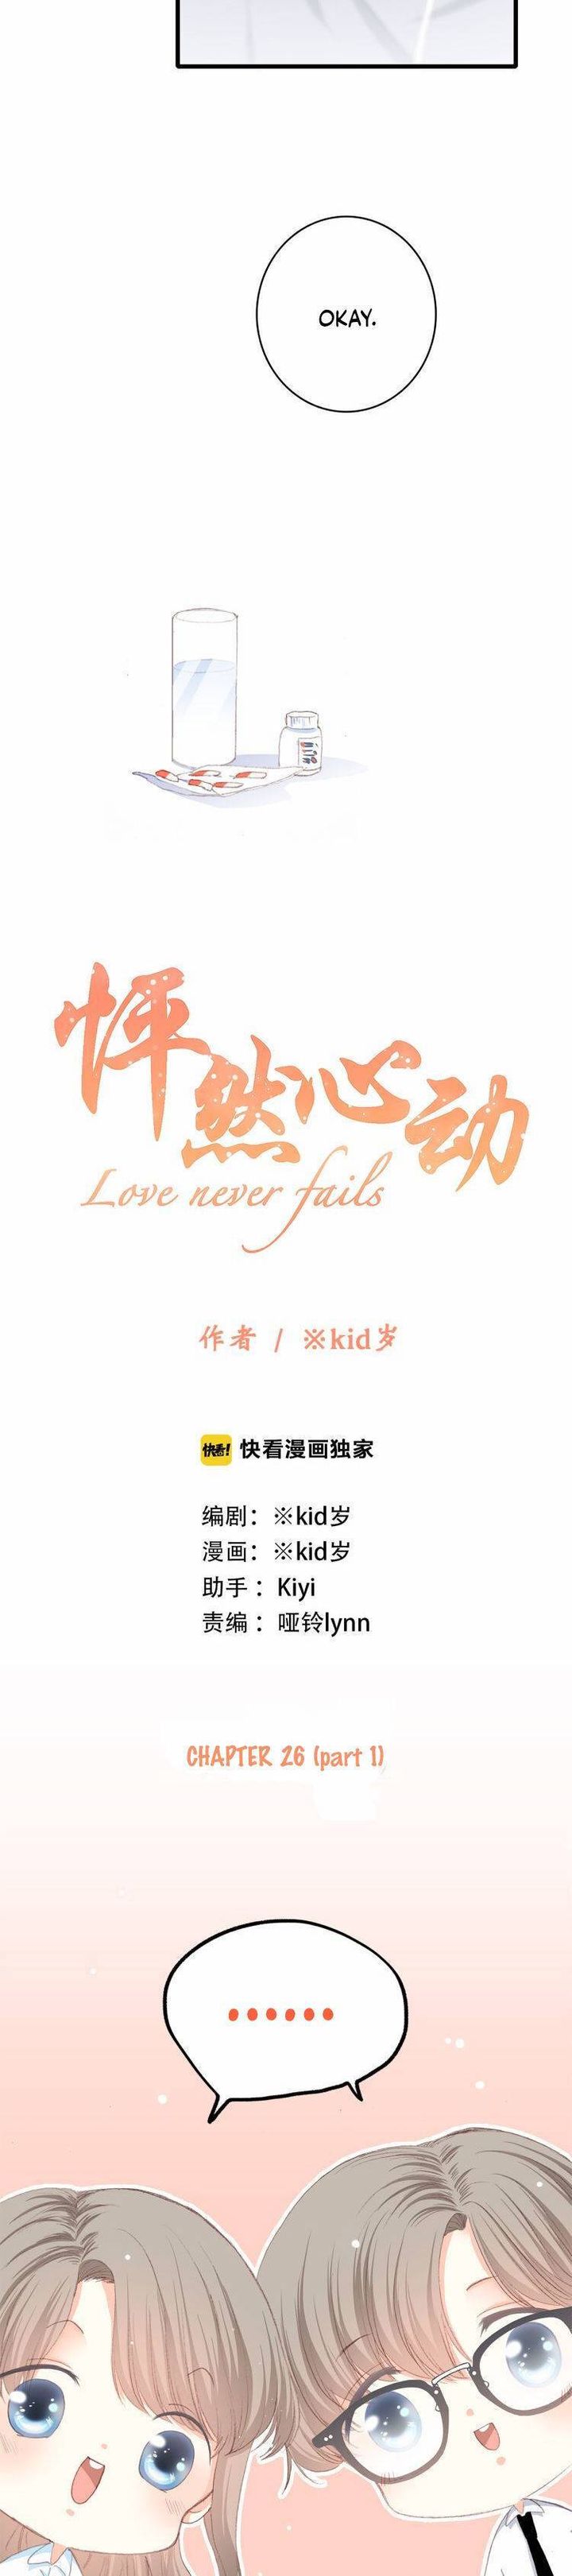 love_never_fails_26_3